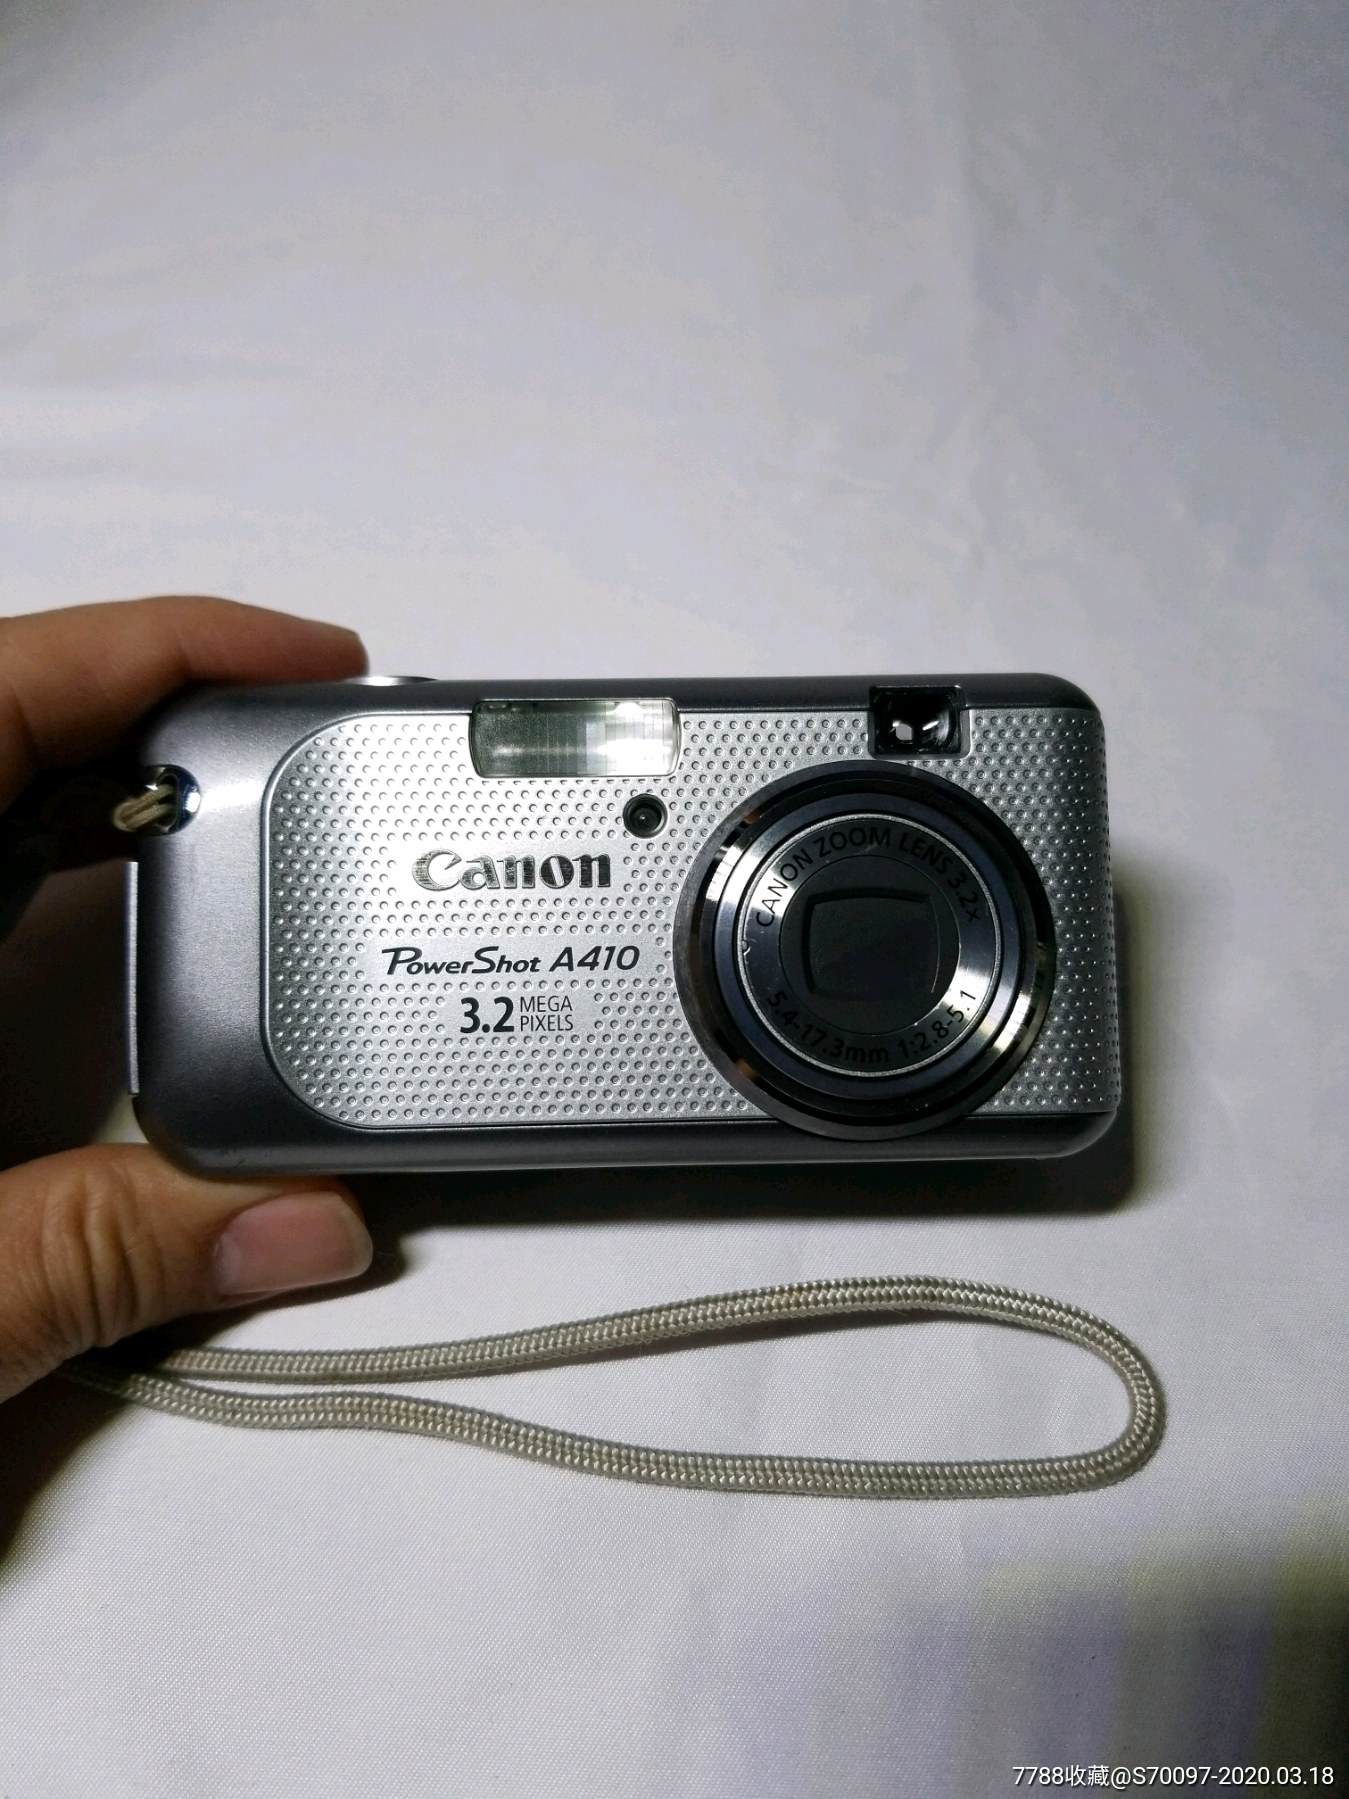 日本佳能canon微型数码相机a410,老古董照片拍照相机摄像机,问题机,非